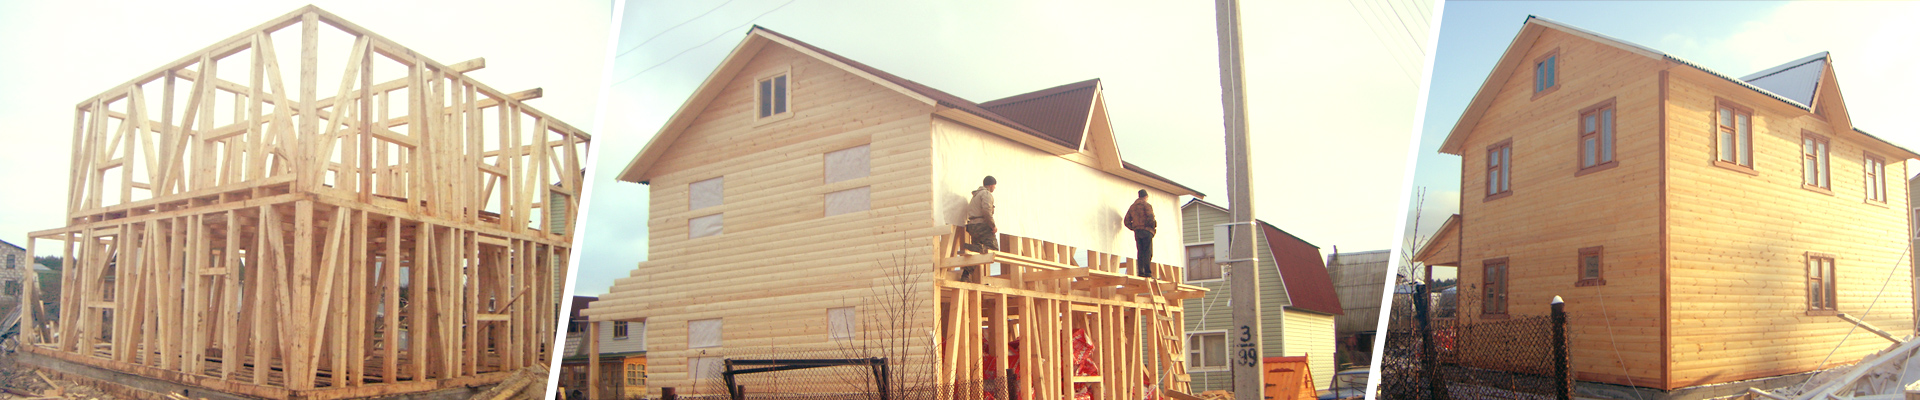 Процесс строительства деревянного дома под ключ